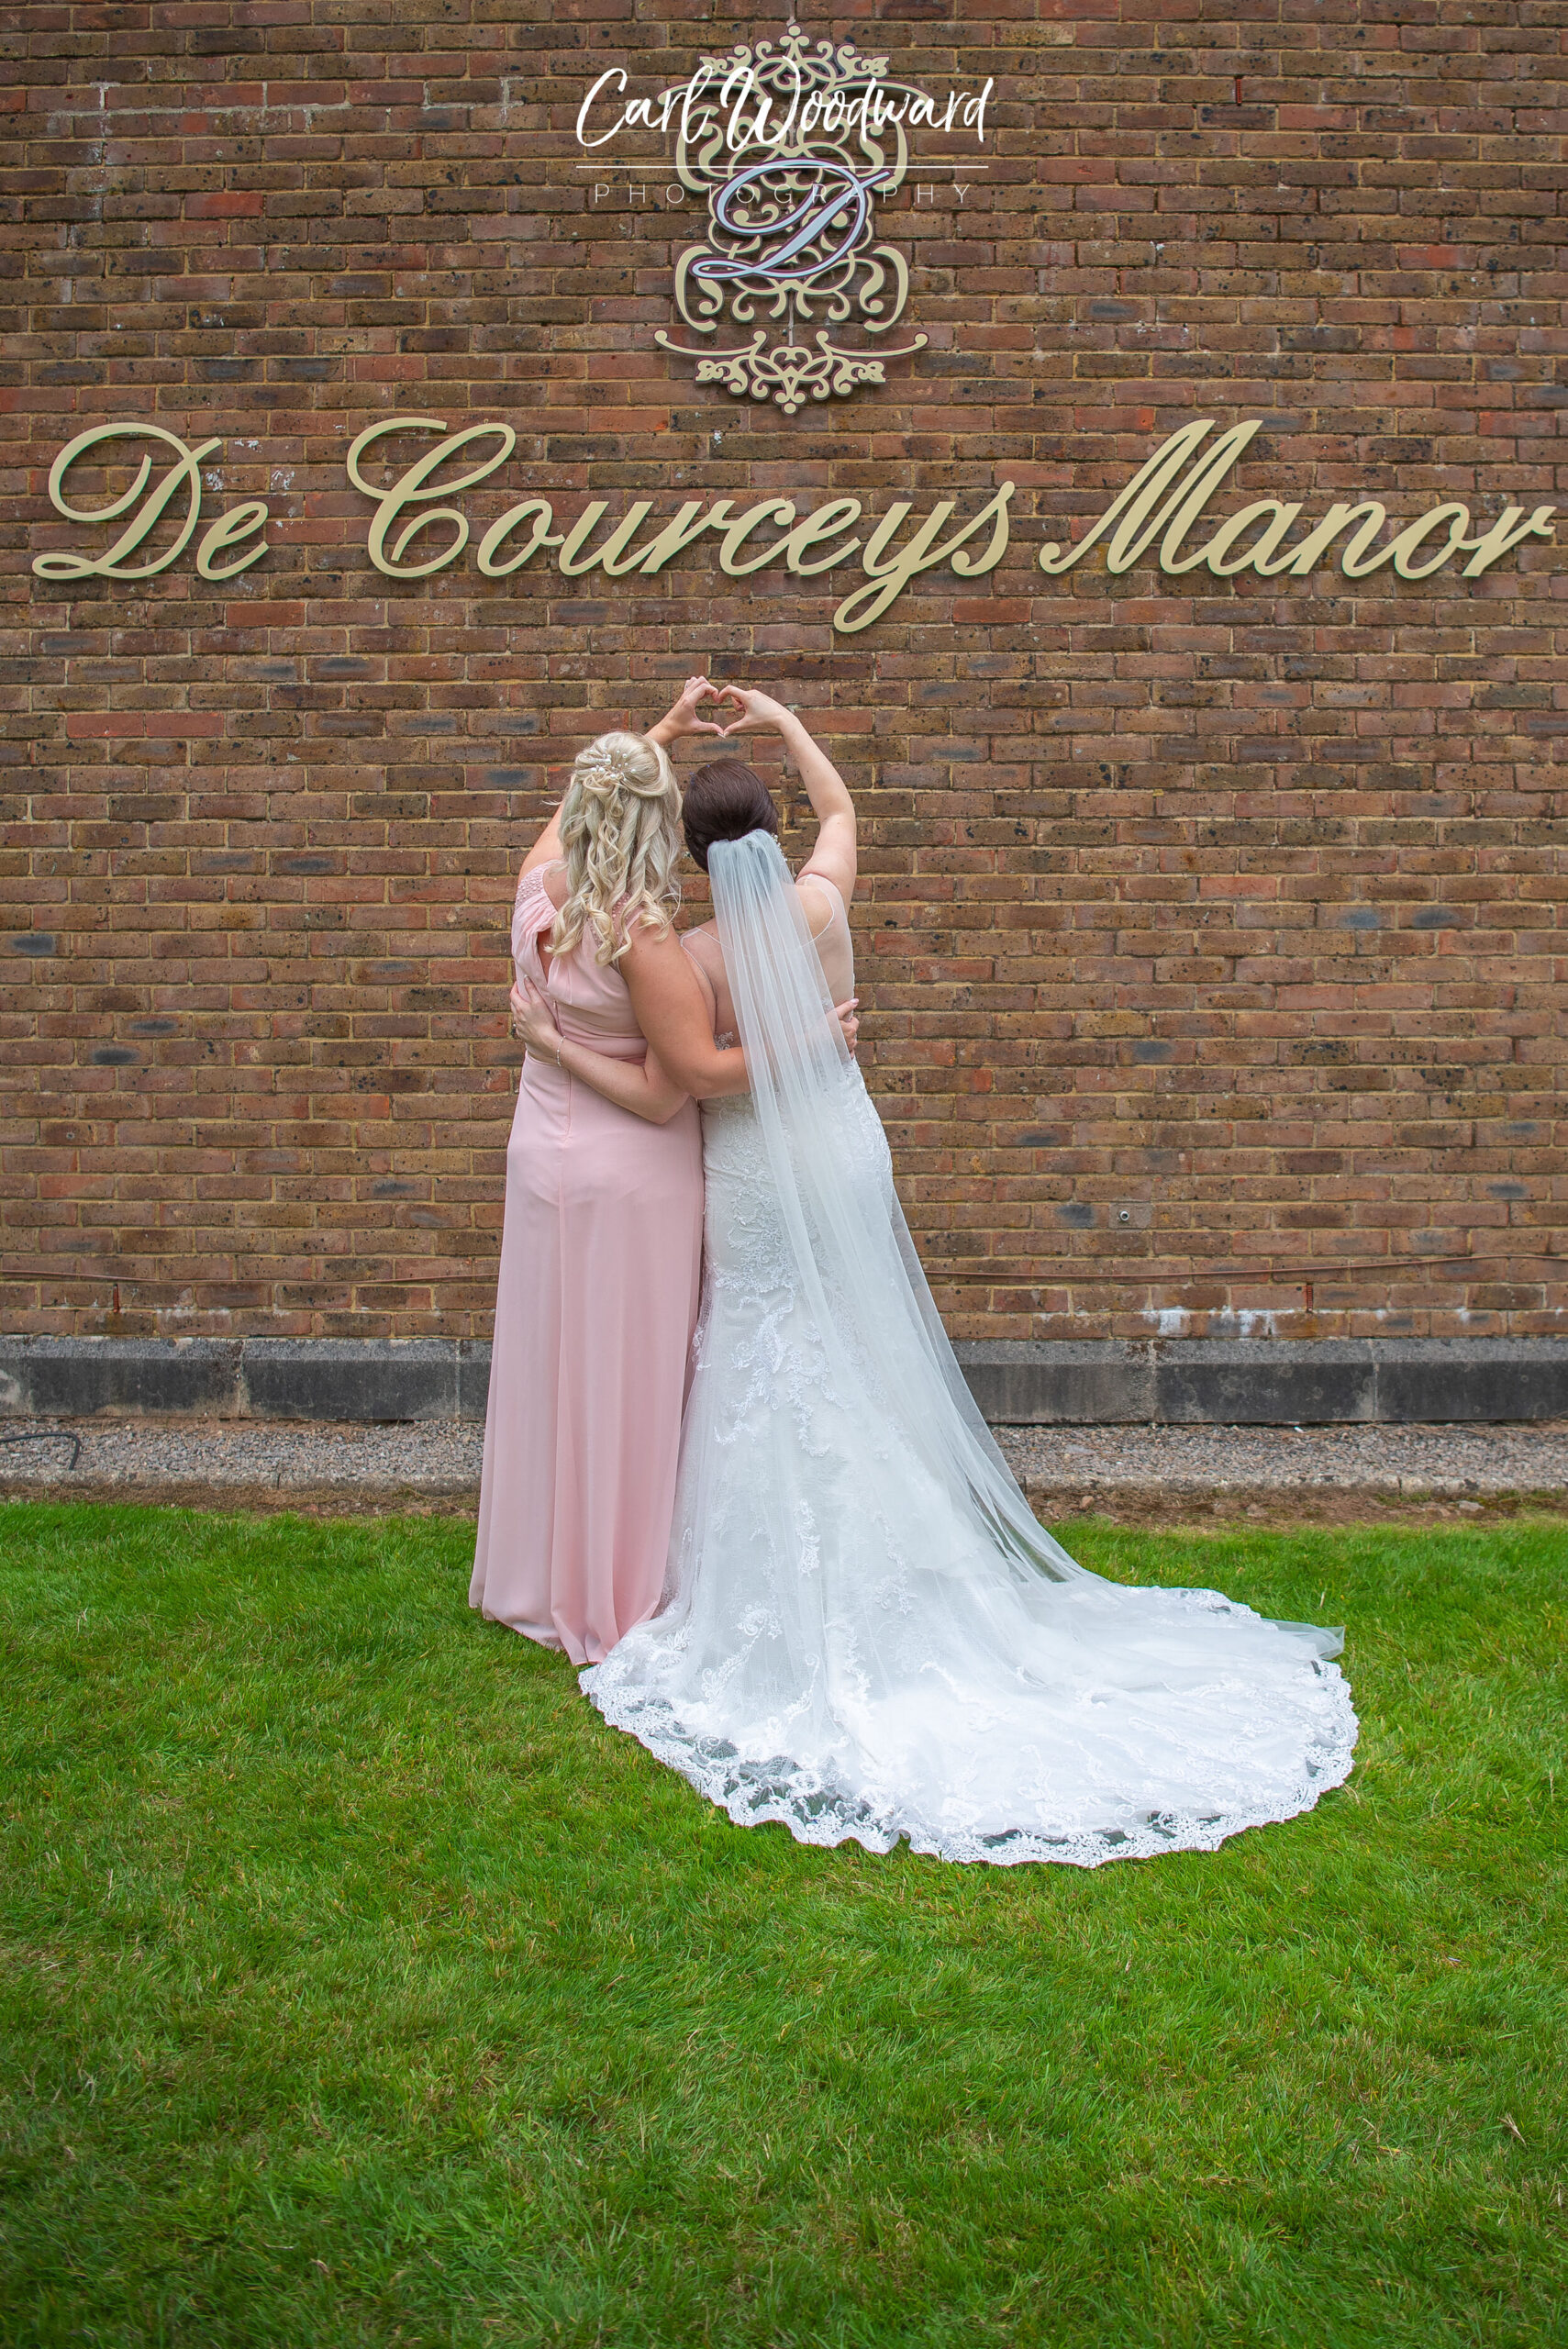 017-De-Courcesys-Manor-Weddings.jpg